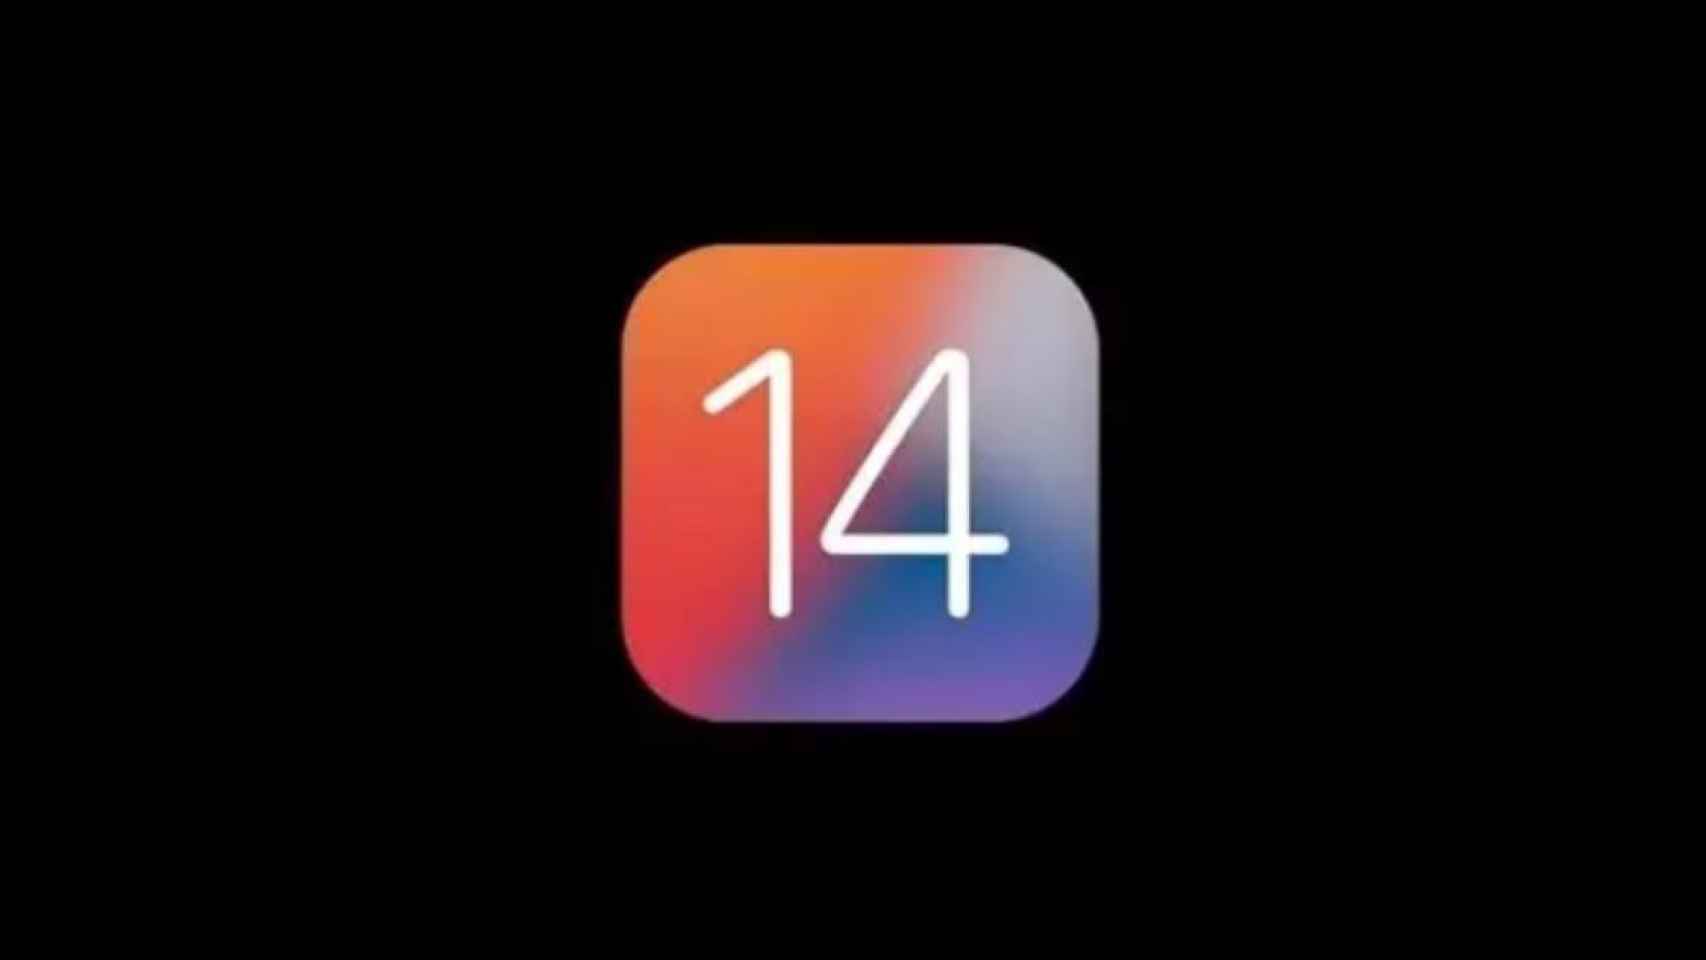 Icono del sistema operativo iOS 14 de Apple